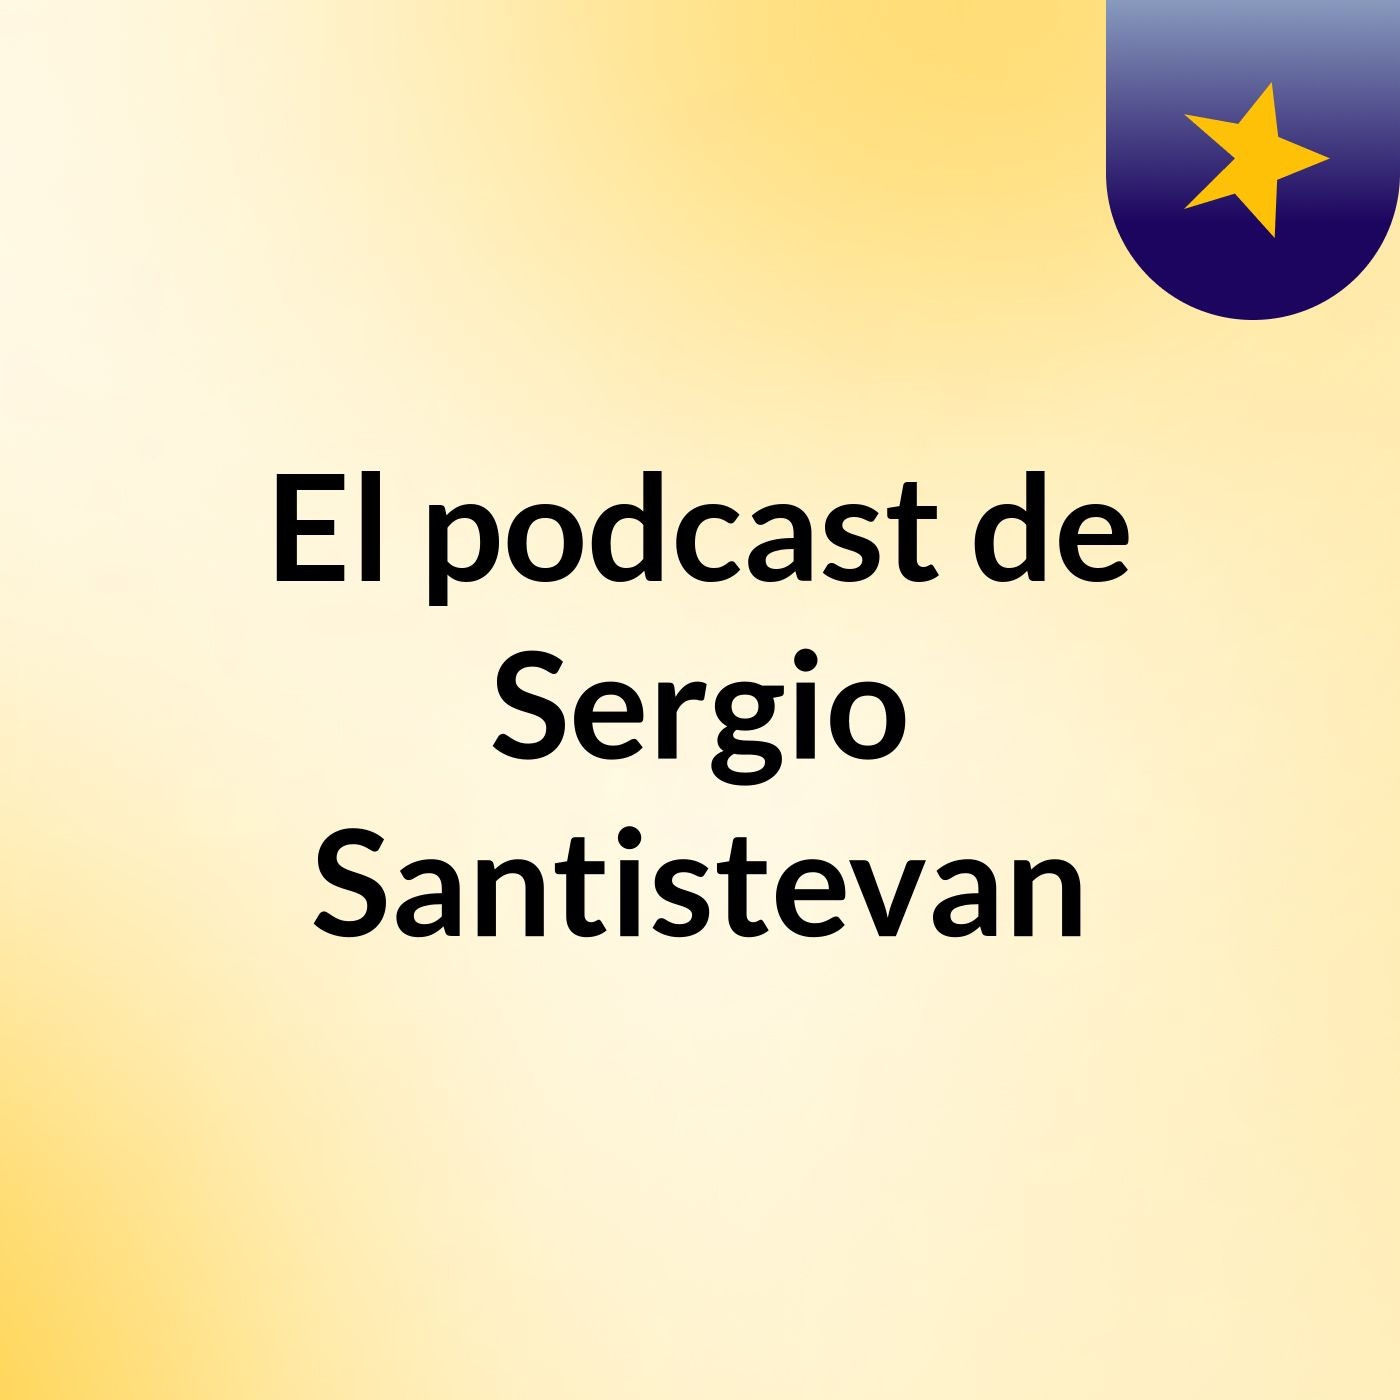 El podcast de Sergio Santistevan